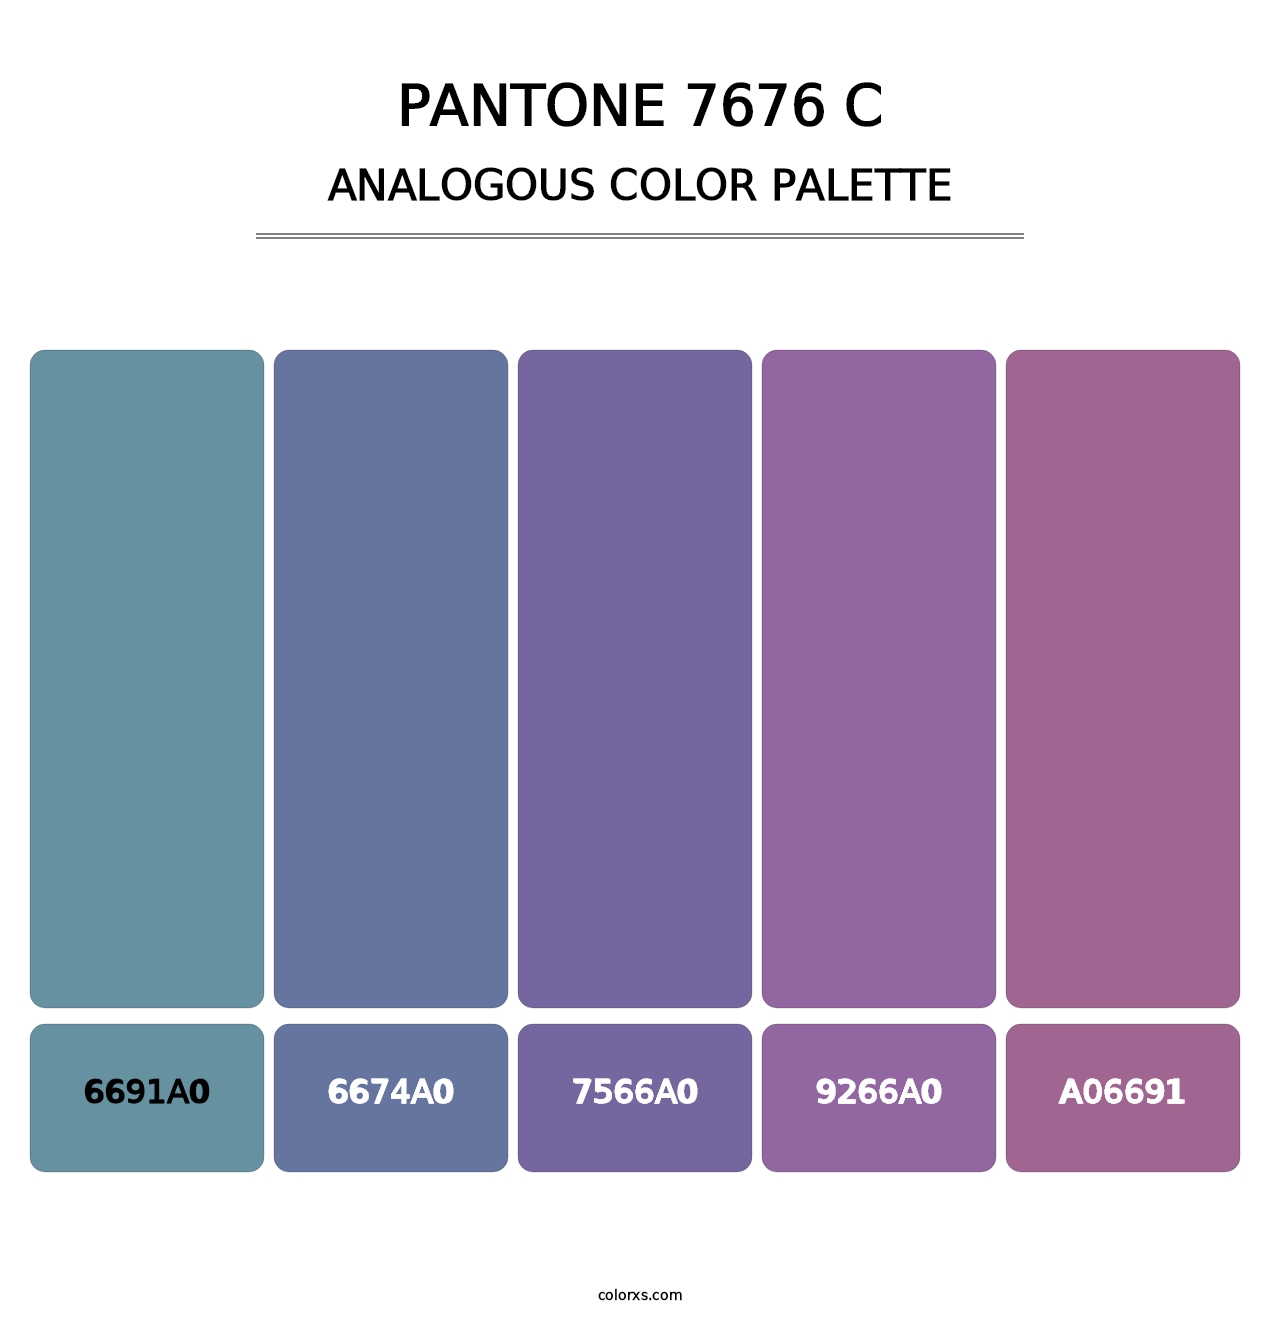 PANTONE 7676 C - Analogous Color Palette